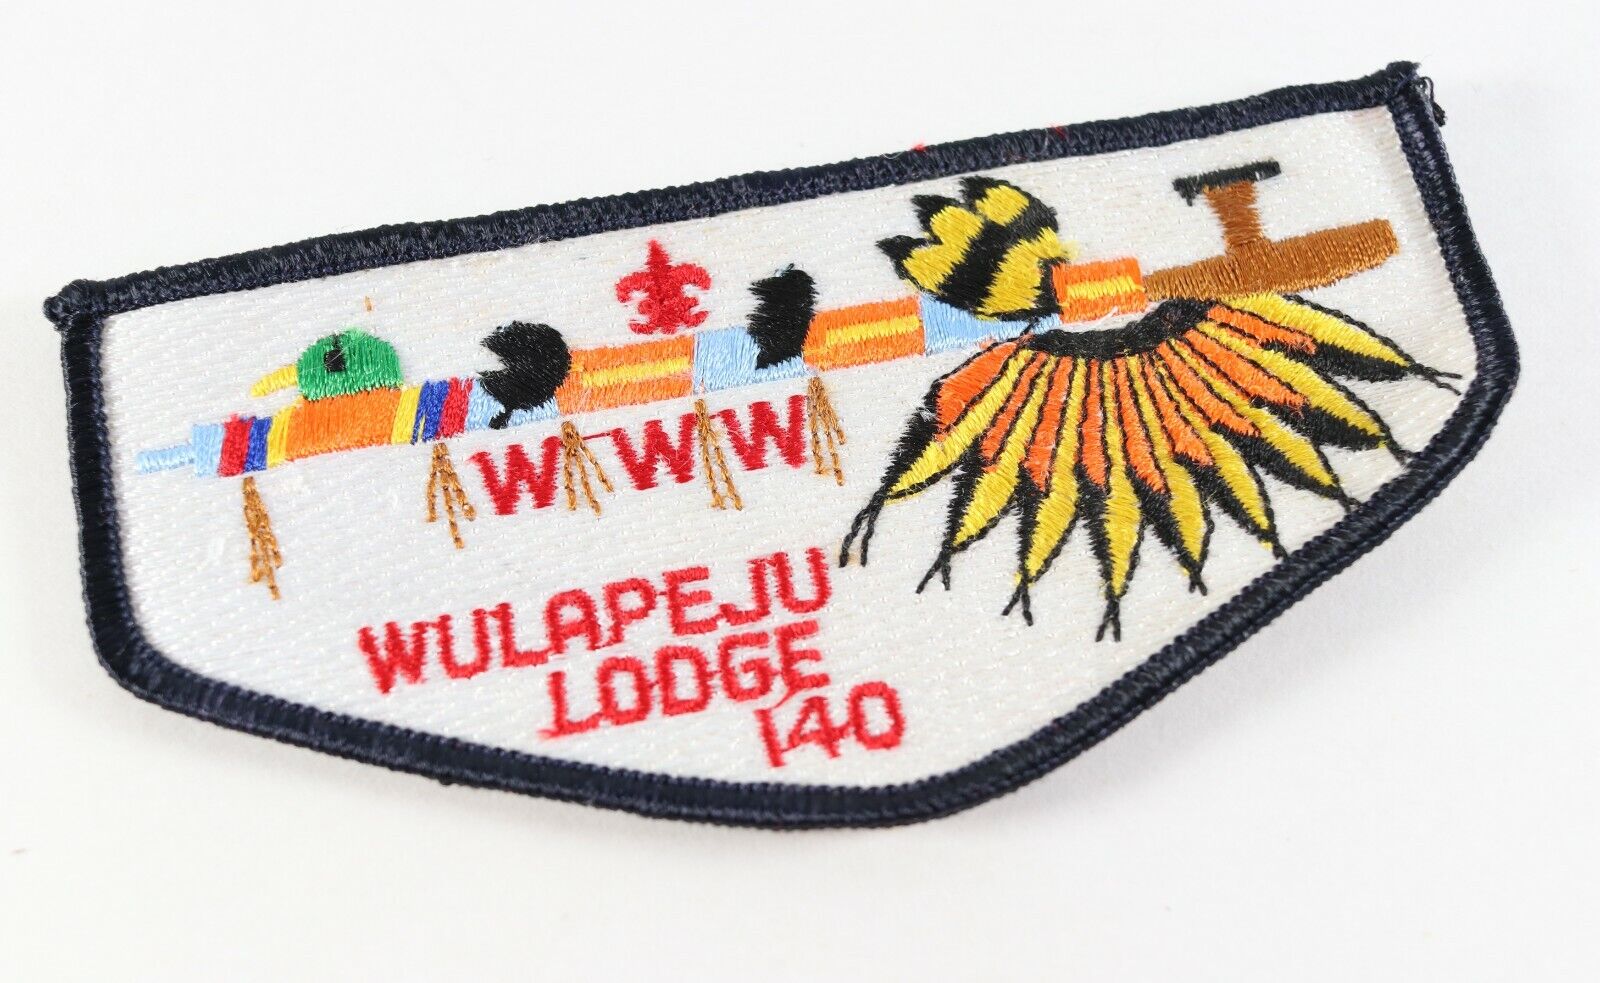 Vintage Wulapeju Lodge 140 OA Order Arrow WWW Boy Scouts America Flap Patch